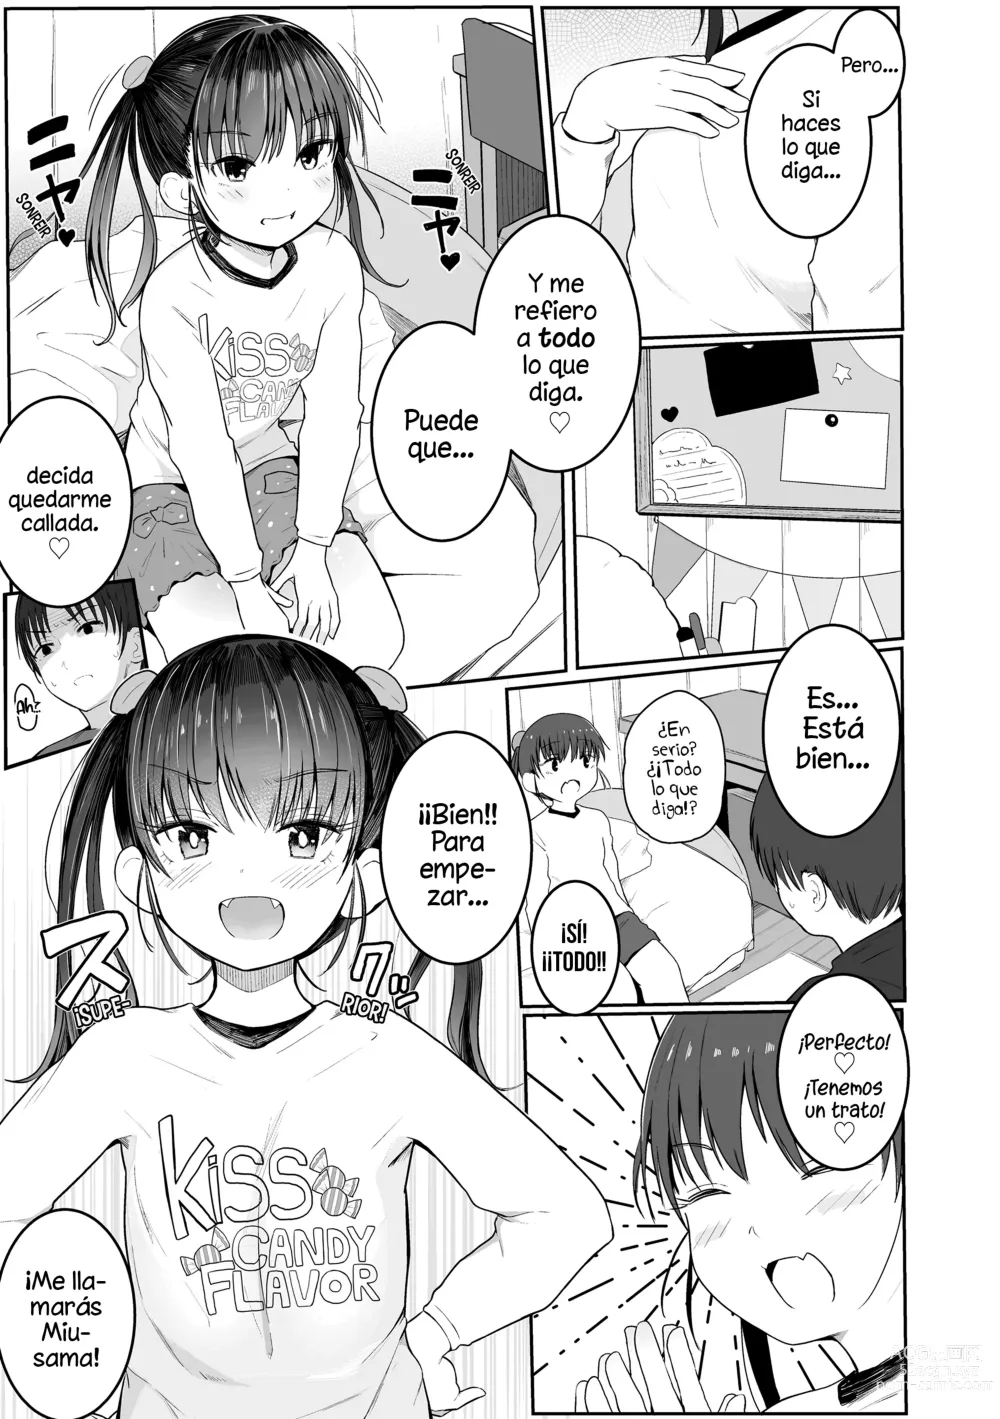 Page 5 of manga ¡Enséñame❤Sensei!